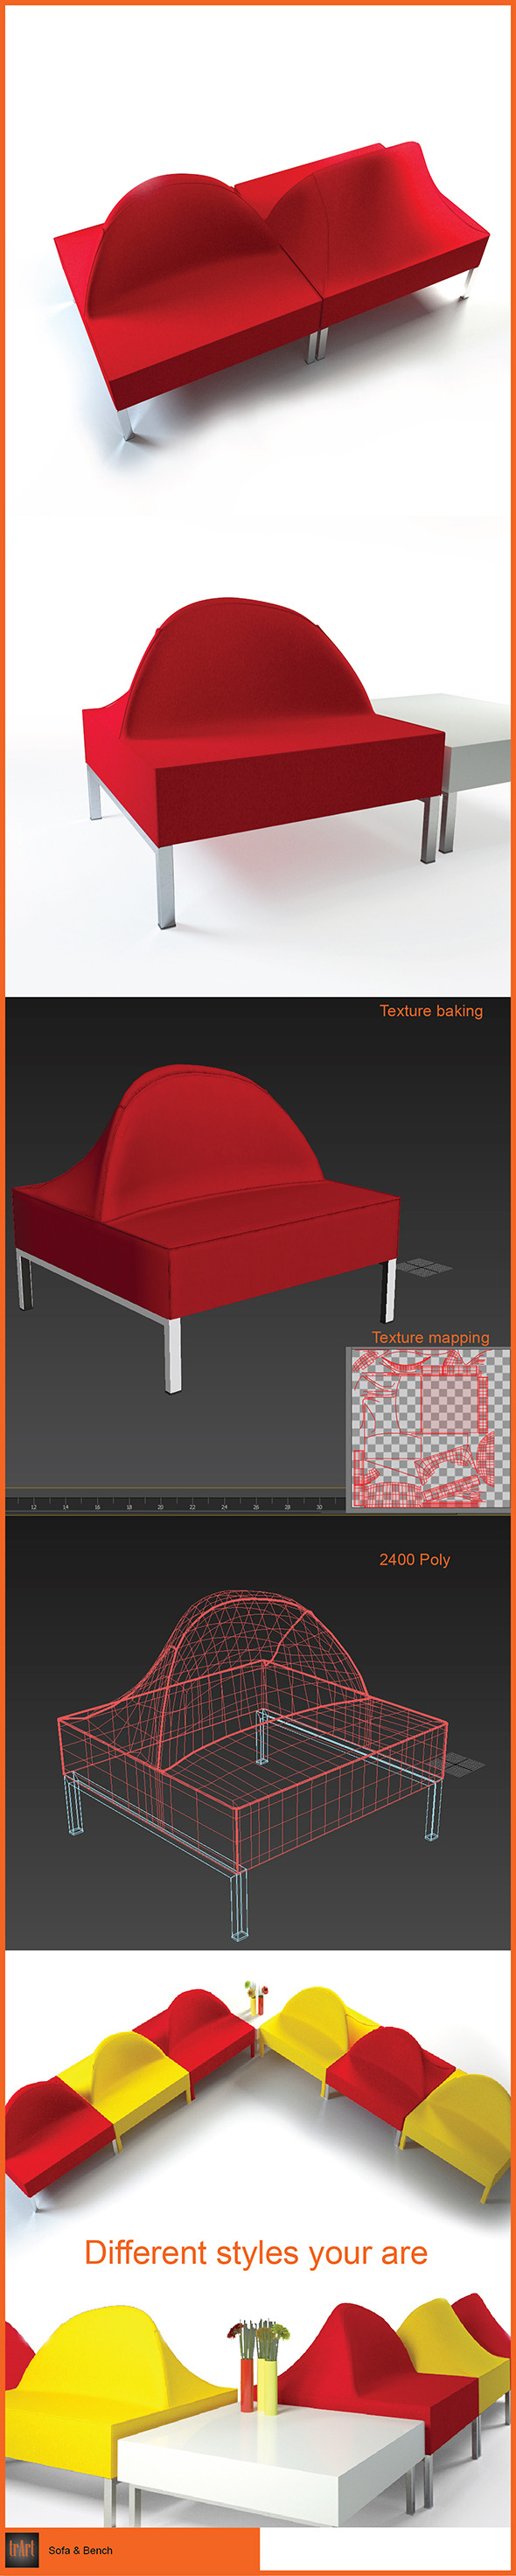 Sofa Bench - 3Docean 6237949